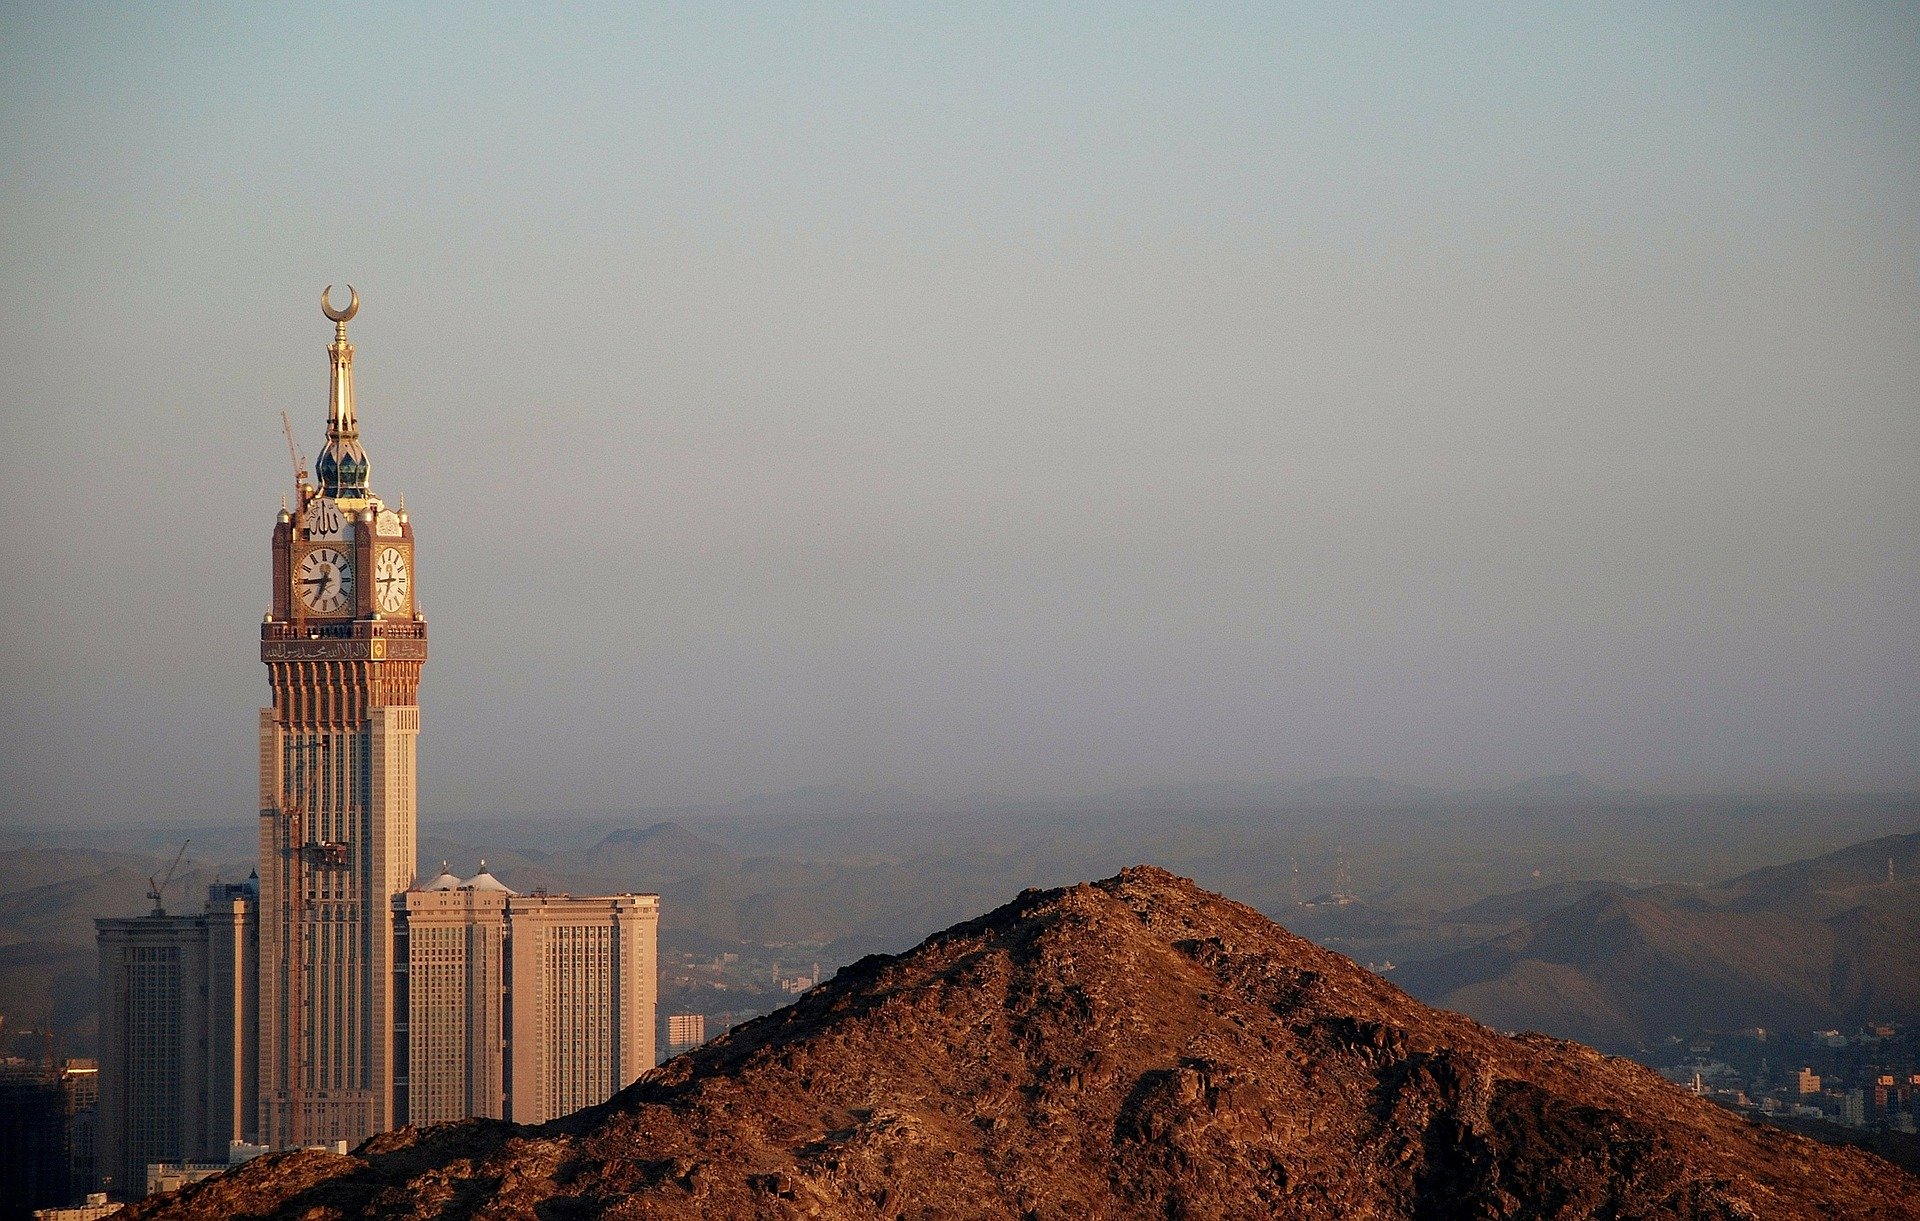 Der riesige Clock Tower von Mekka ist ein echtes Wahrzeichen